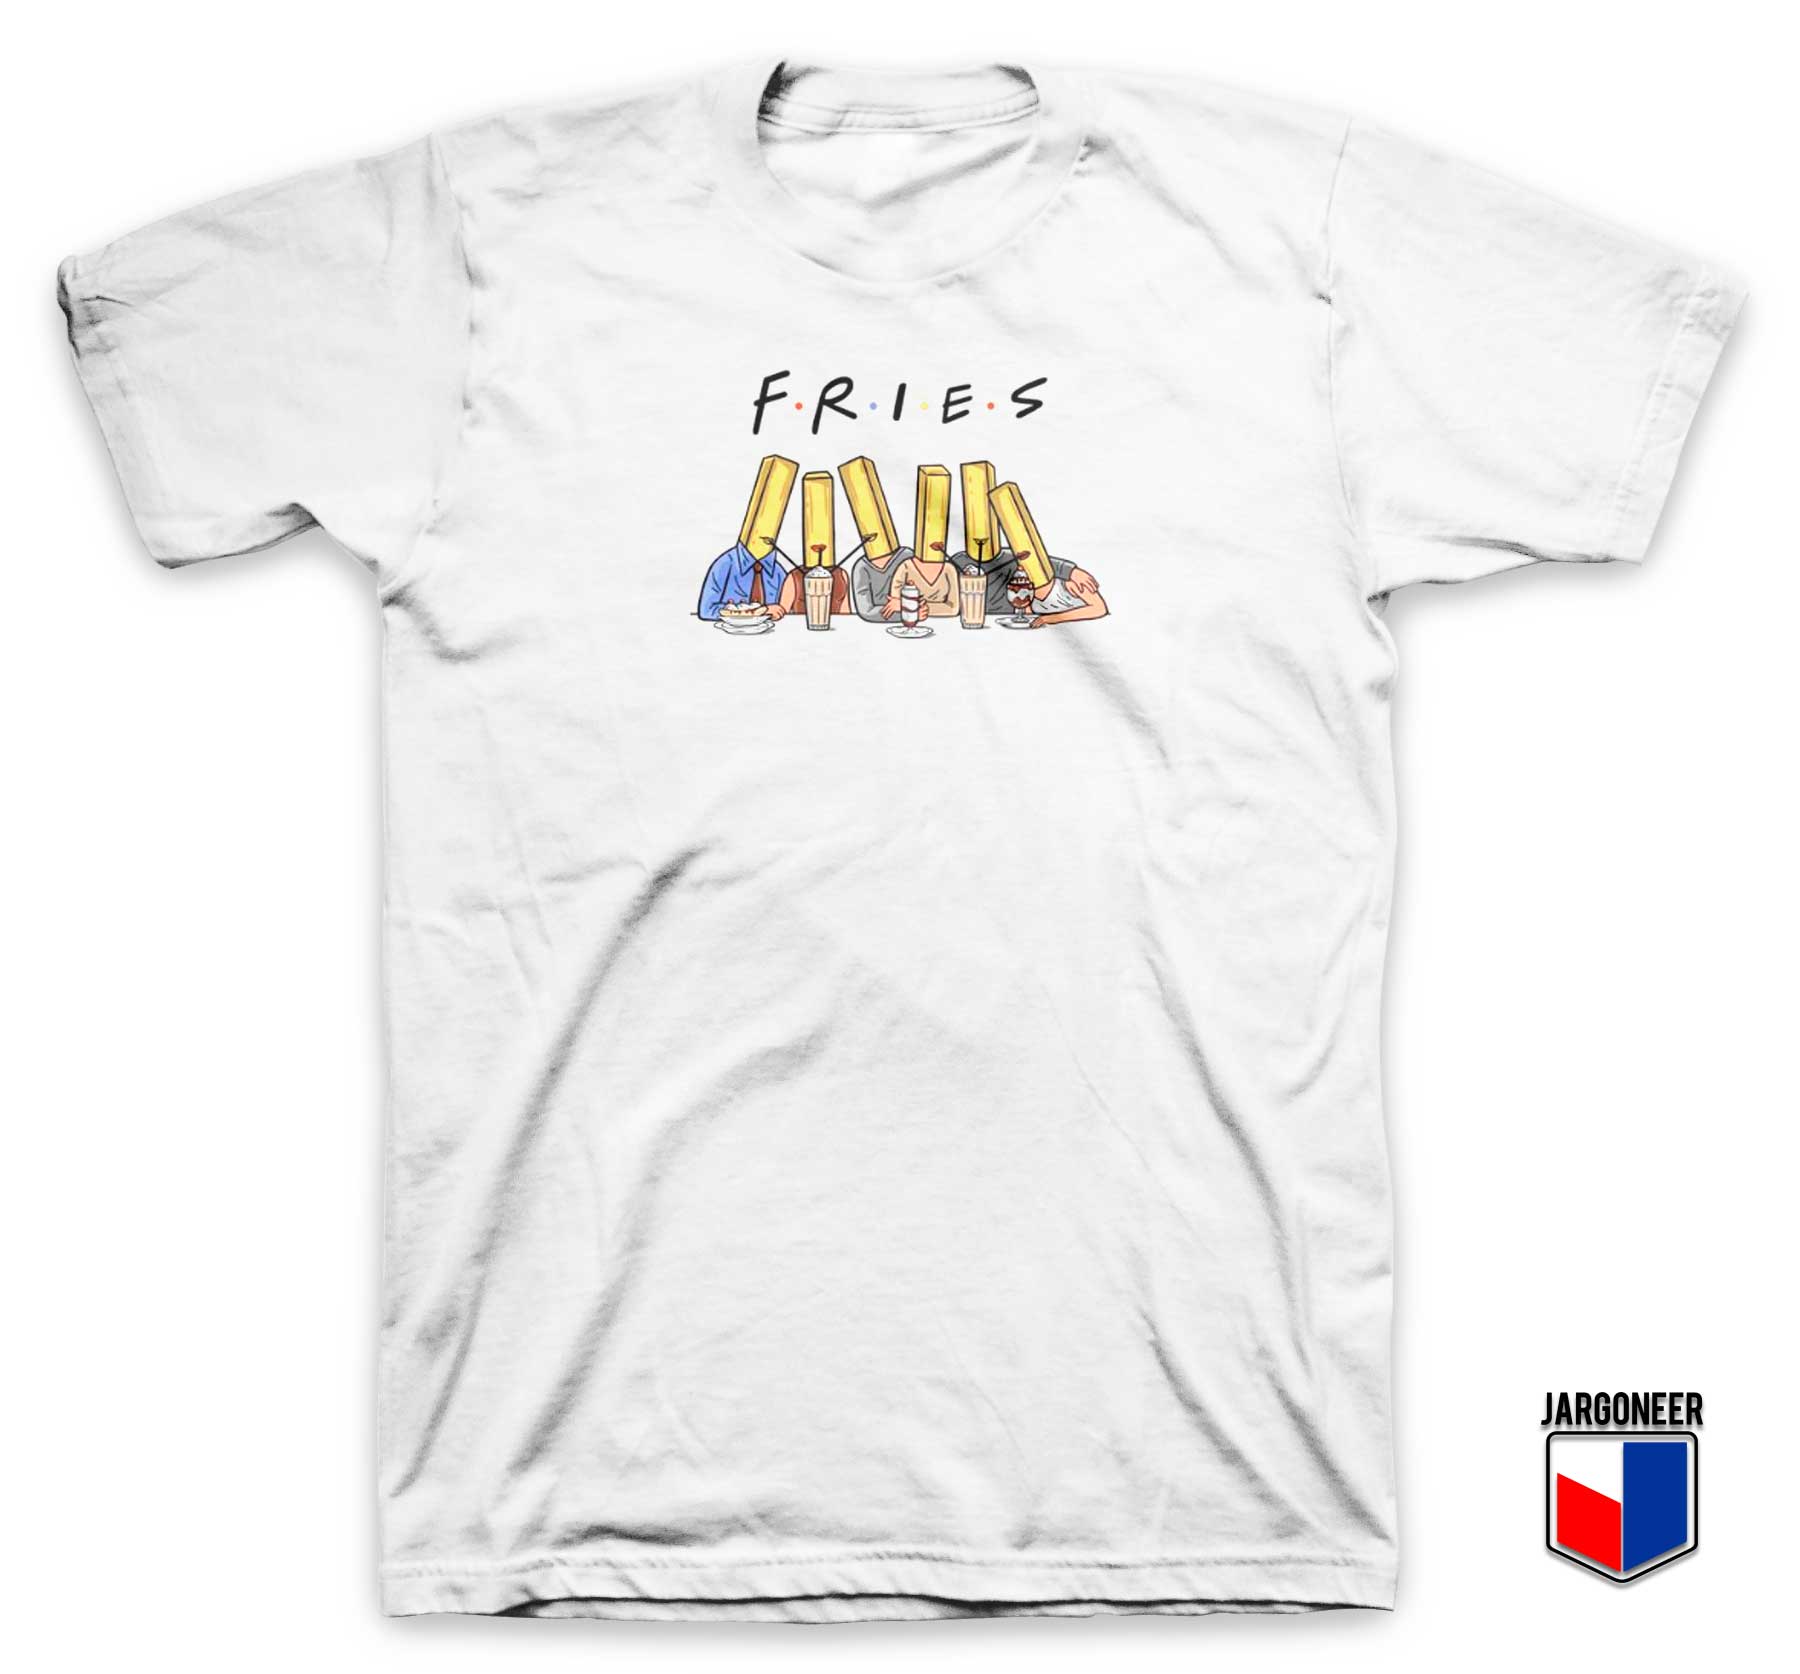 Fries With Friends T Shirt - Shop Unique Graphic Cool Shirt Designs